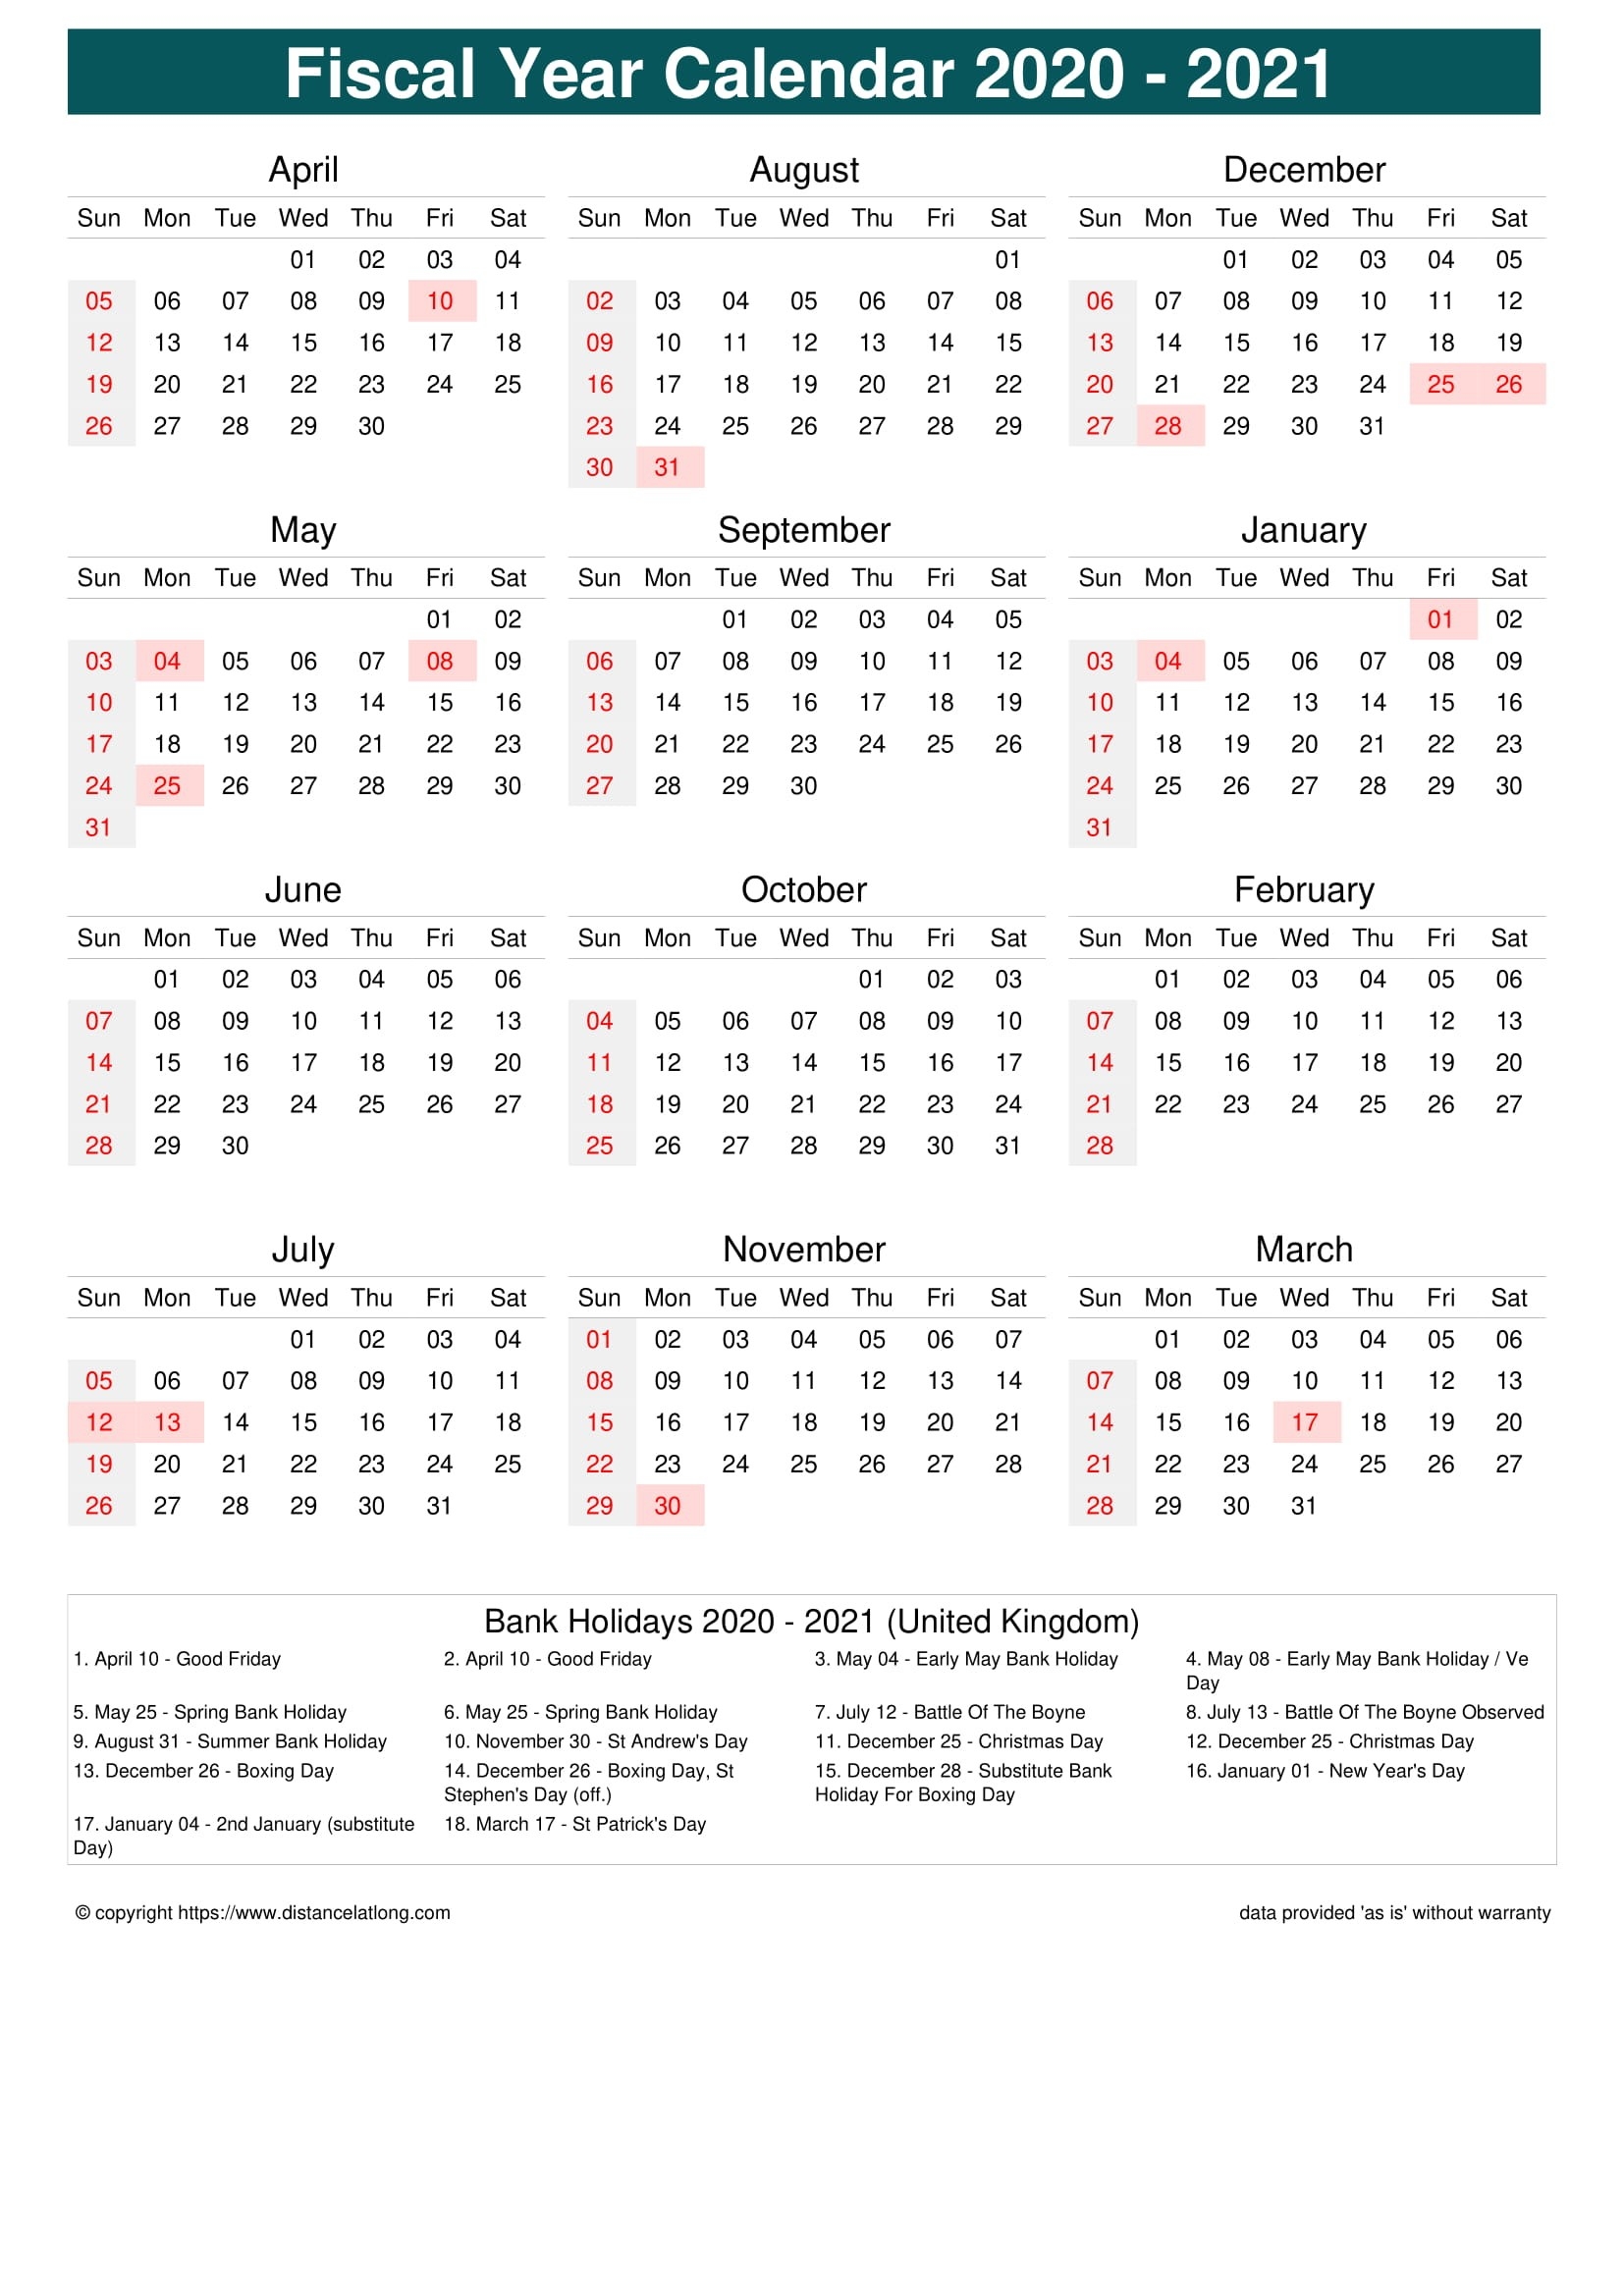 Fiscal Year 2020-2021 Calendar Templates, Free Printable  2021 19 Financial Calendar Printable